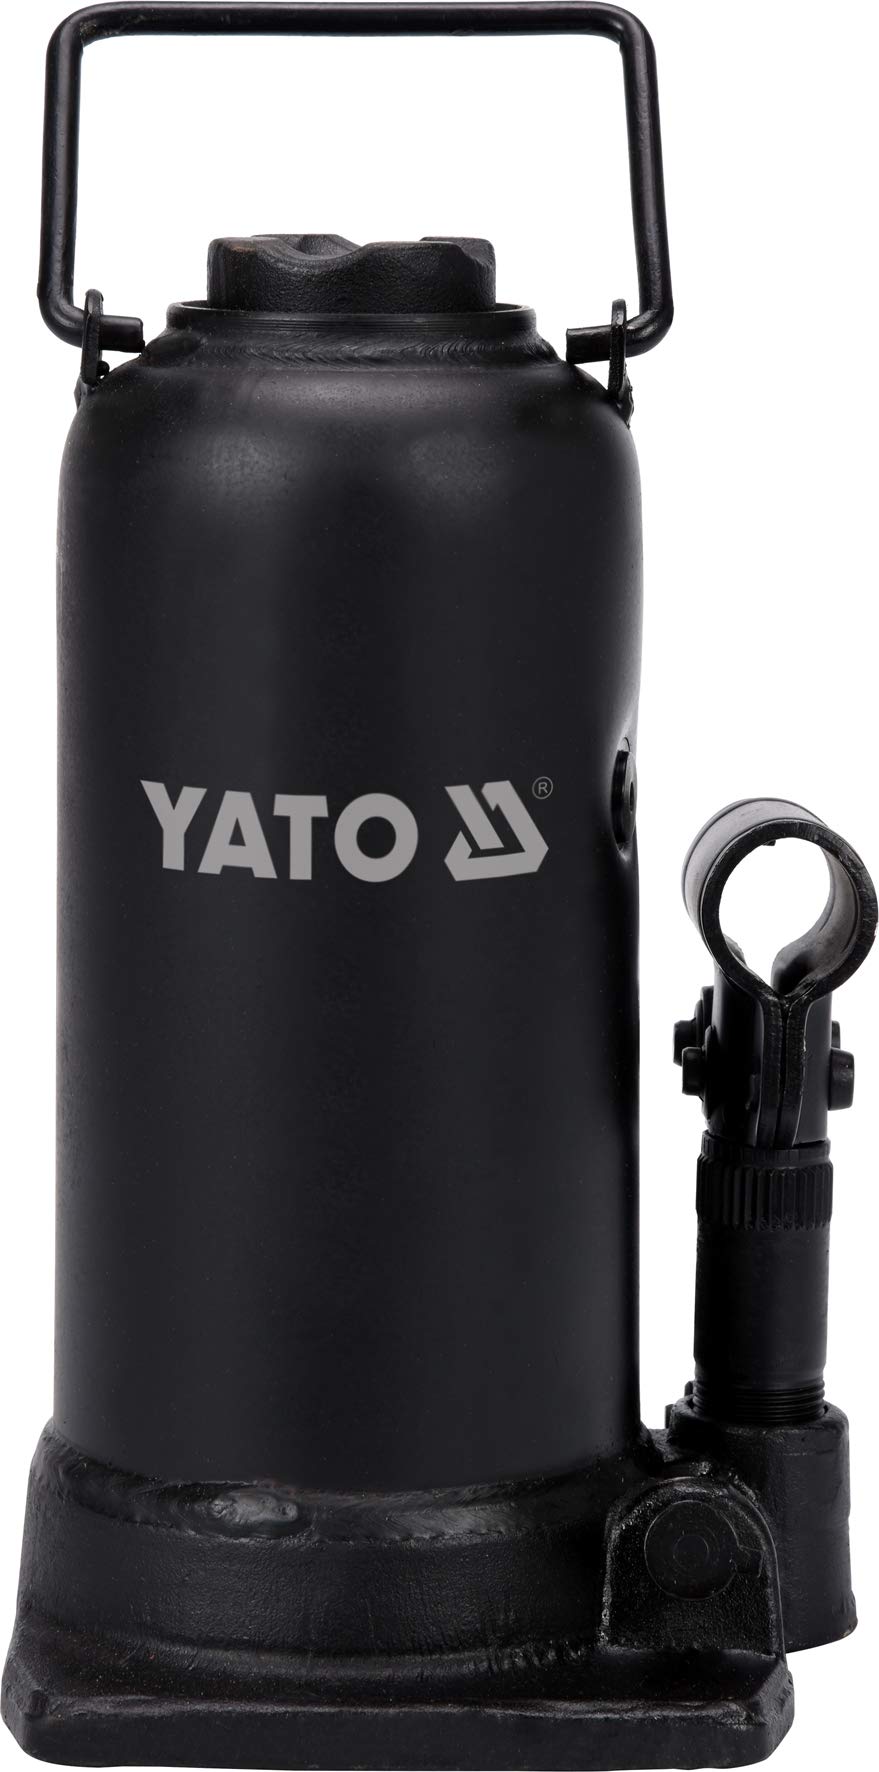 Yato Profi hydraulischer Stempelwagenheber 12 t / 12000 kg, Hubhöhe: 230 – 505 mm, stabile Ausführung, Flaschenheber Wagenheber Hydraulikheber von YATO